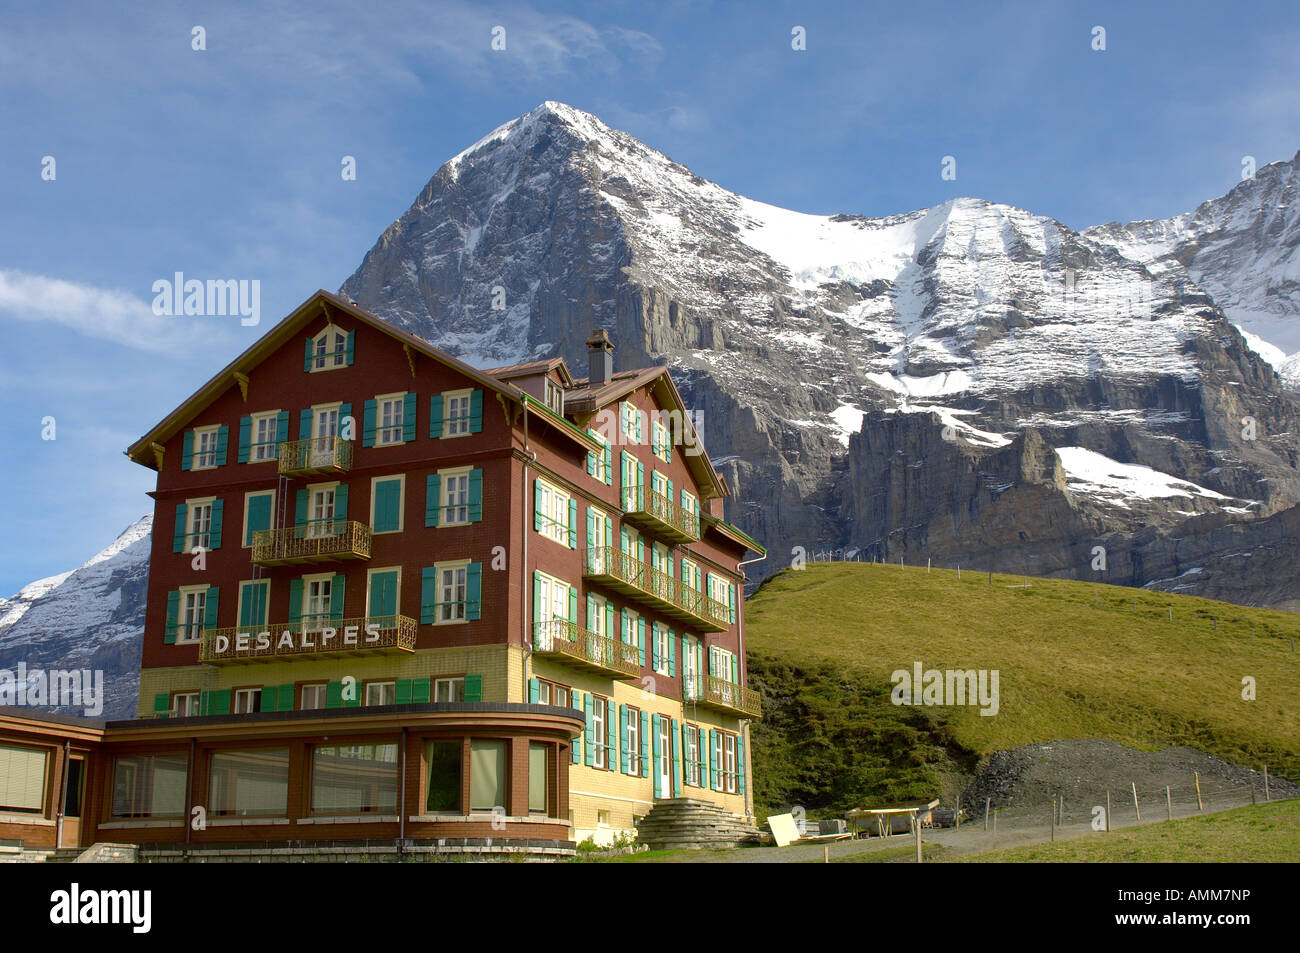 Eiger from Kleine Scheidegg hotel. Grindelwald, swiss alps Switzerland Stock Photo